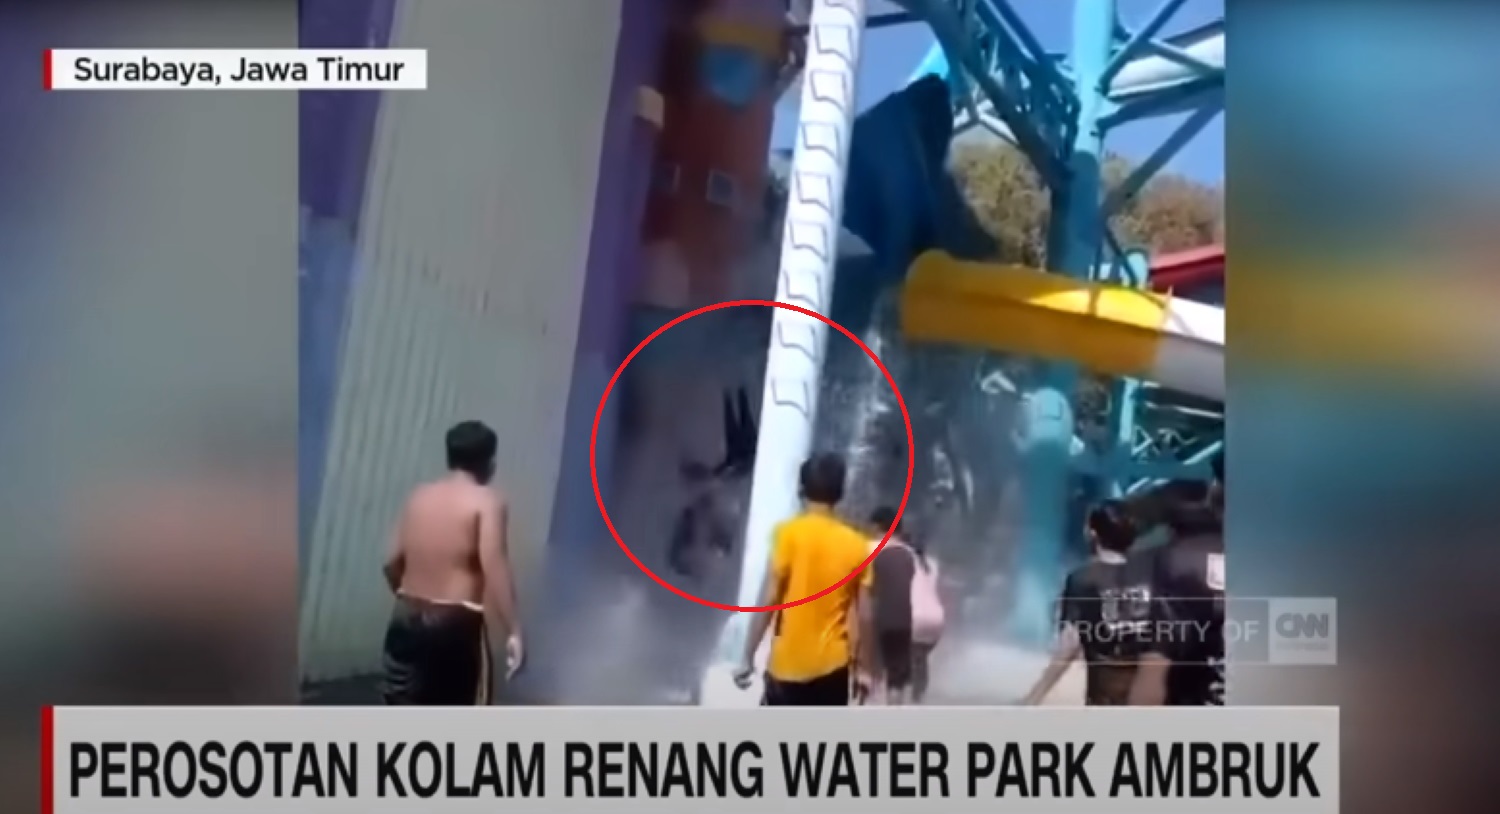 Η στιγμή που καταρρέει νεροτσουλήθρα στην Ινδονησία – Έπεσαν από ύψος 10 μέτρων